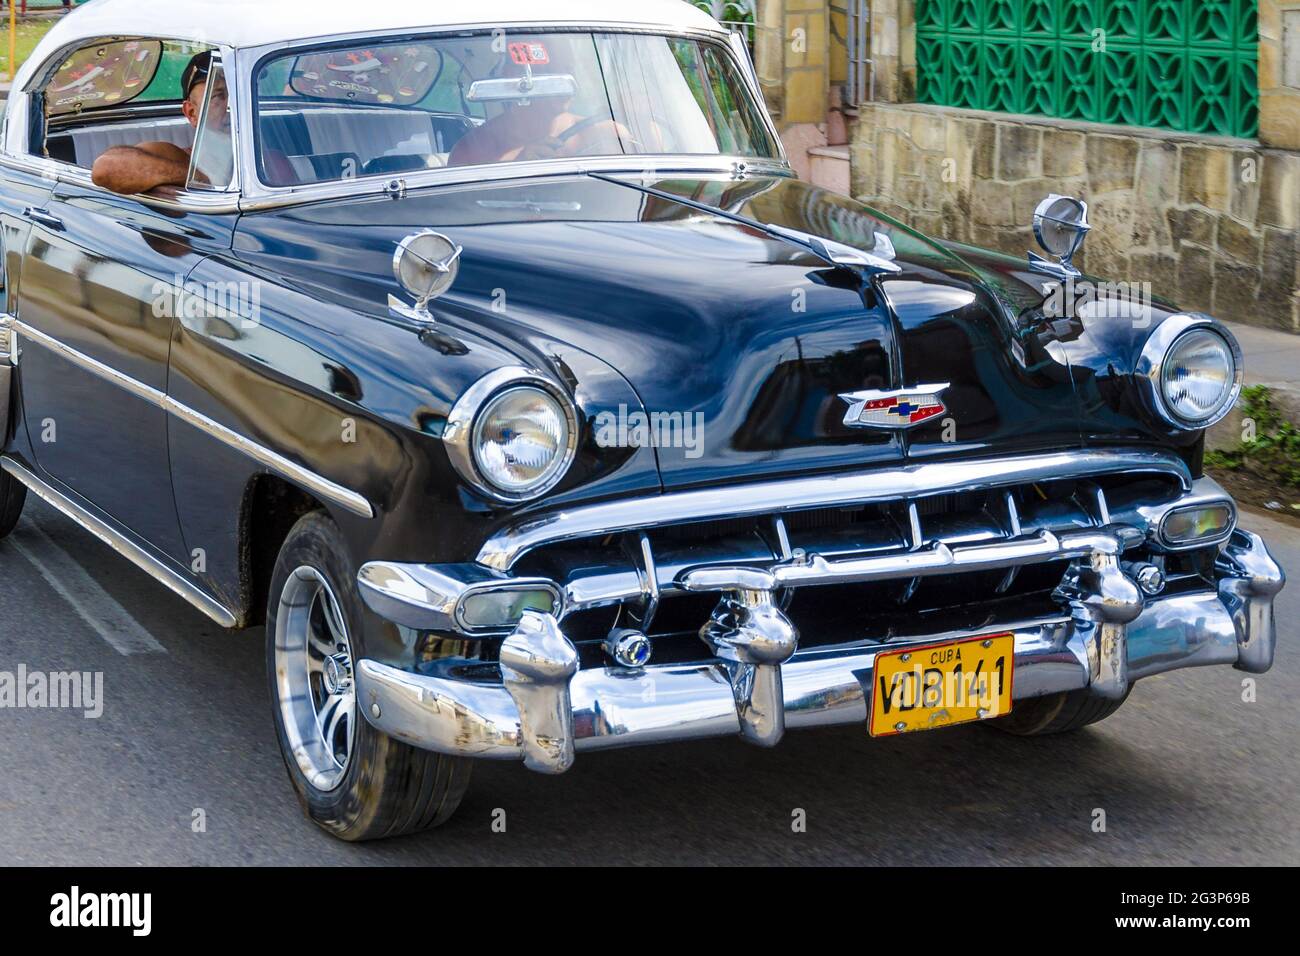 Medios de Transporte en Cuba: Chevrolet 49 o 1949, después de que el  Gobierno Comunista implementara cambios económicos, muchos entraron en el  negocio del transporte Fotografía de stock - Alamy